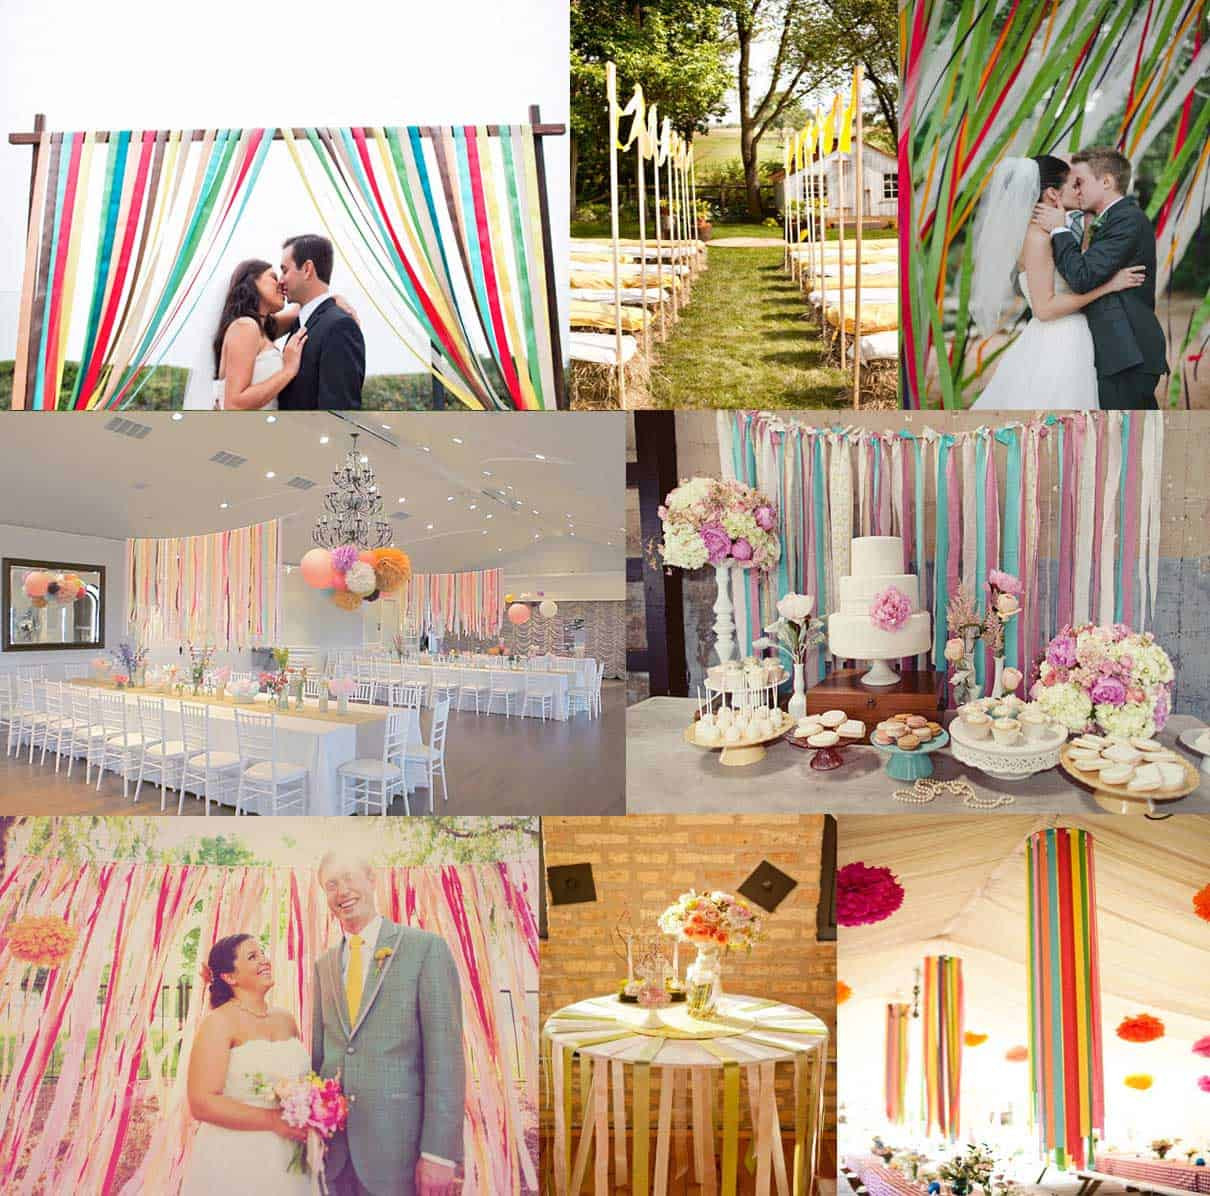 DIY Wedding Reception Ideas
 DIY Wedding Decorations For Every Bud Inspired Bride